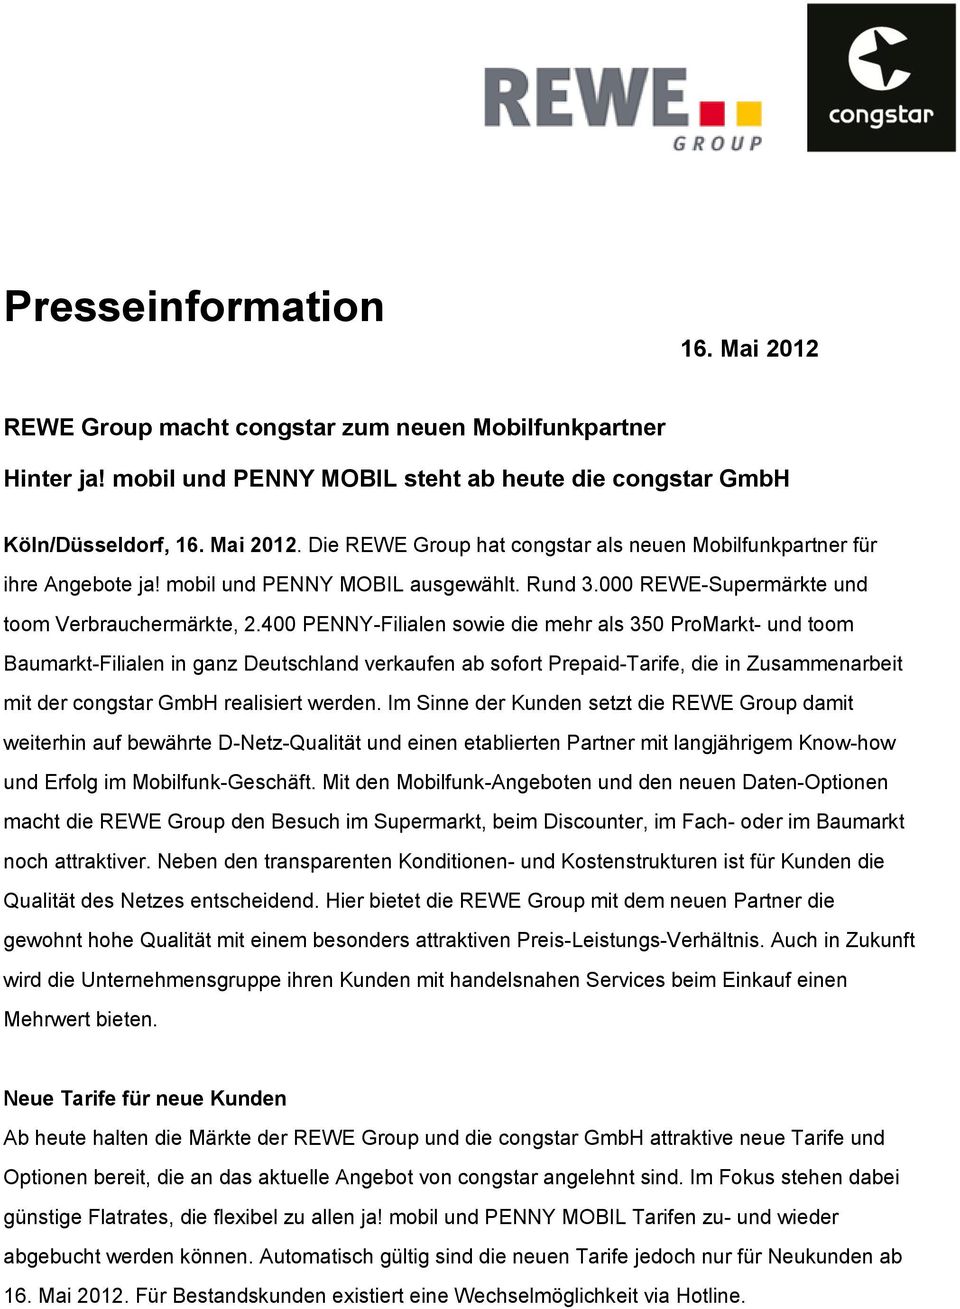 400 PENNY-Filialen sowie die mehr als 350 ProMarkt- und toom Baumarkt-Filialen in ganz Deutschland verkaufen ab sofort Prepaid-Tarife, die in Zusammenarbeit mit der congstar GmbH realisiert werden.